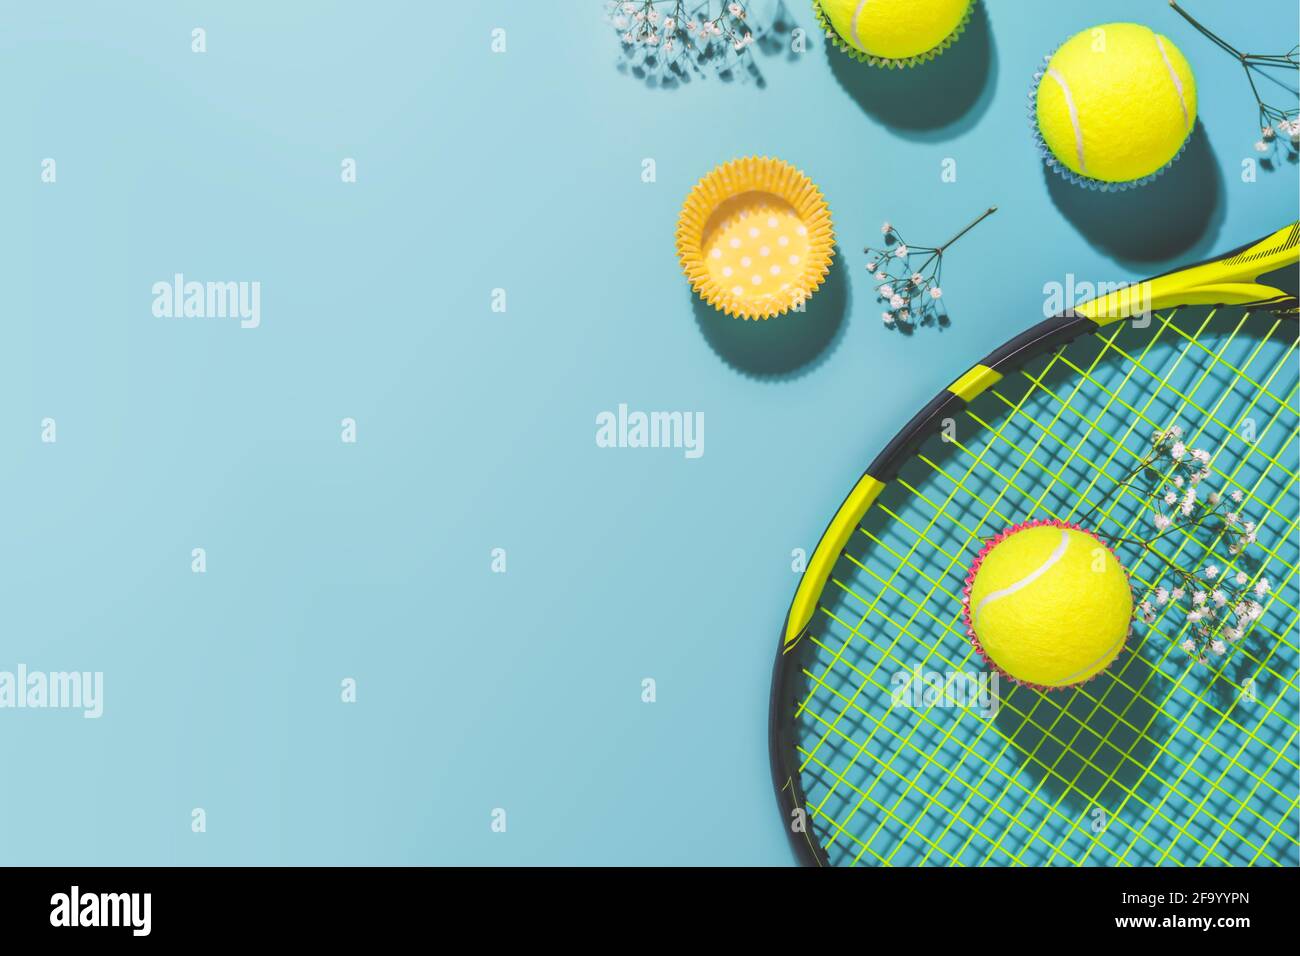 Partie de tennis. Composition sportive de Holliday avec balle de tennis jaune et raquette sur fond bleu d'un court de tennis dur Banque D'Images